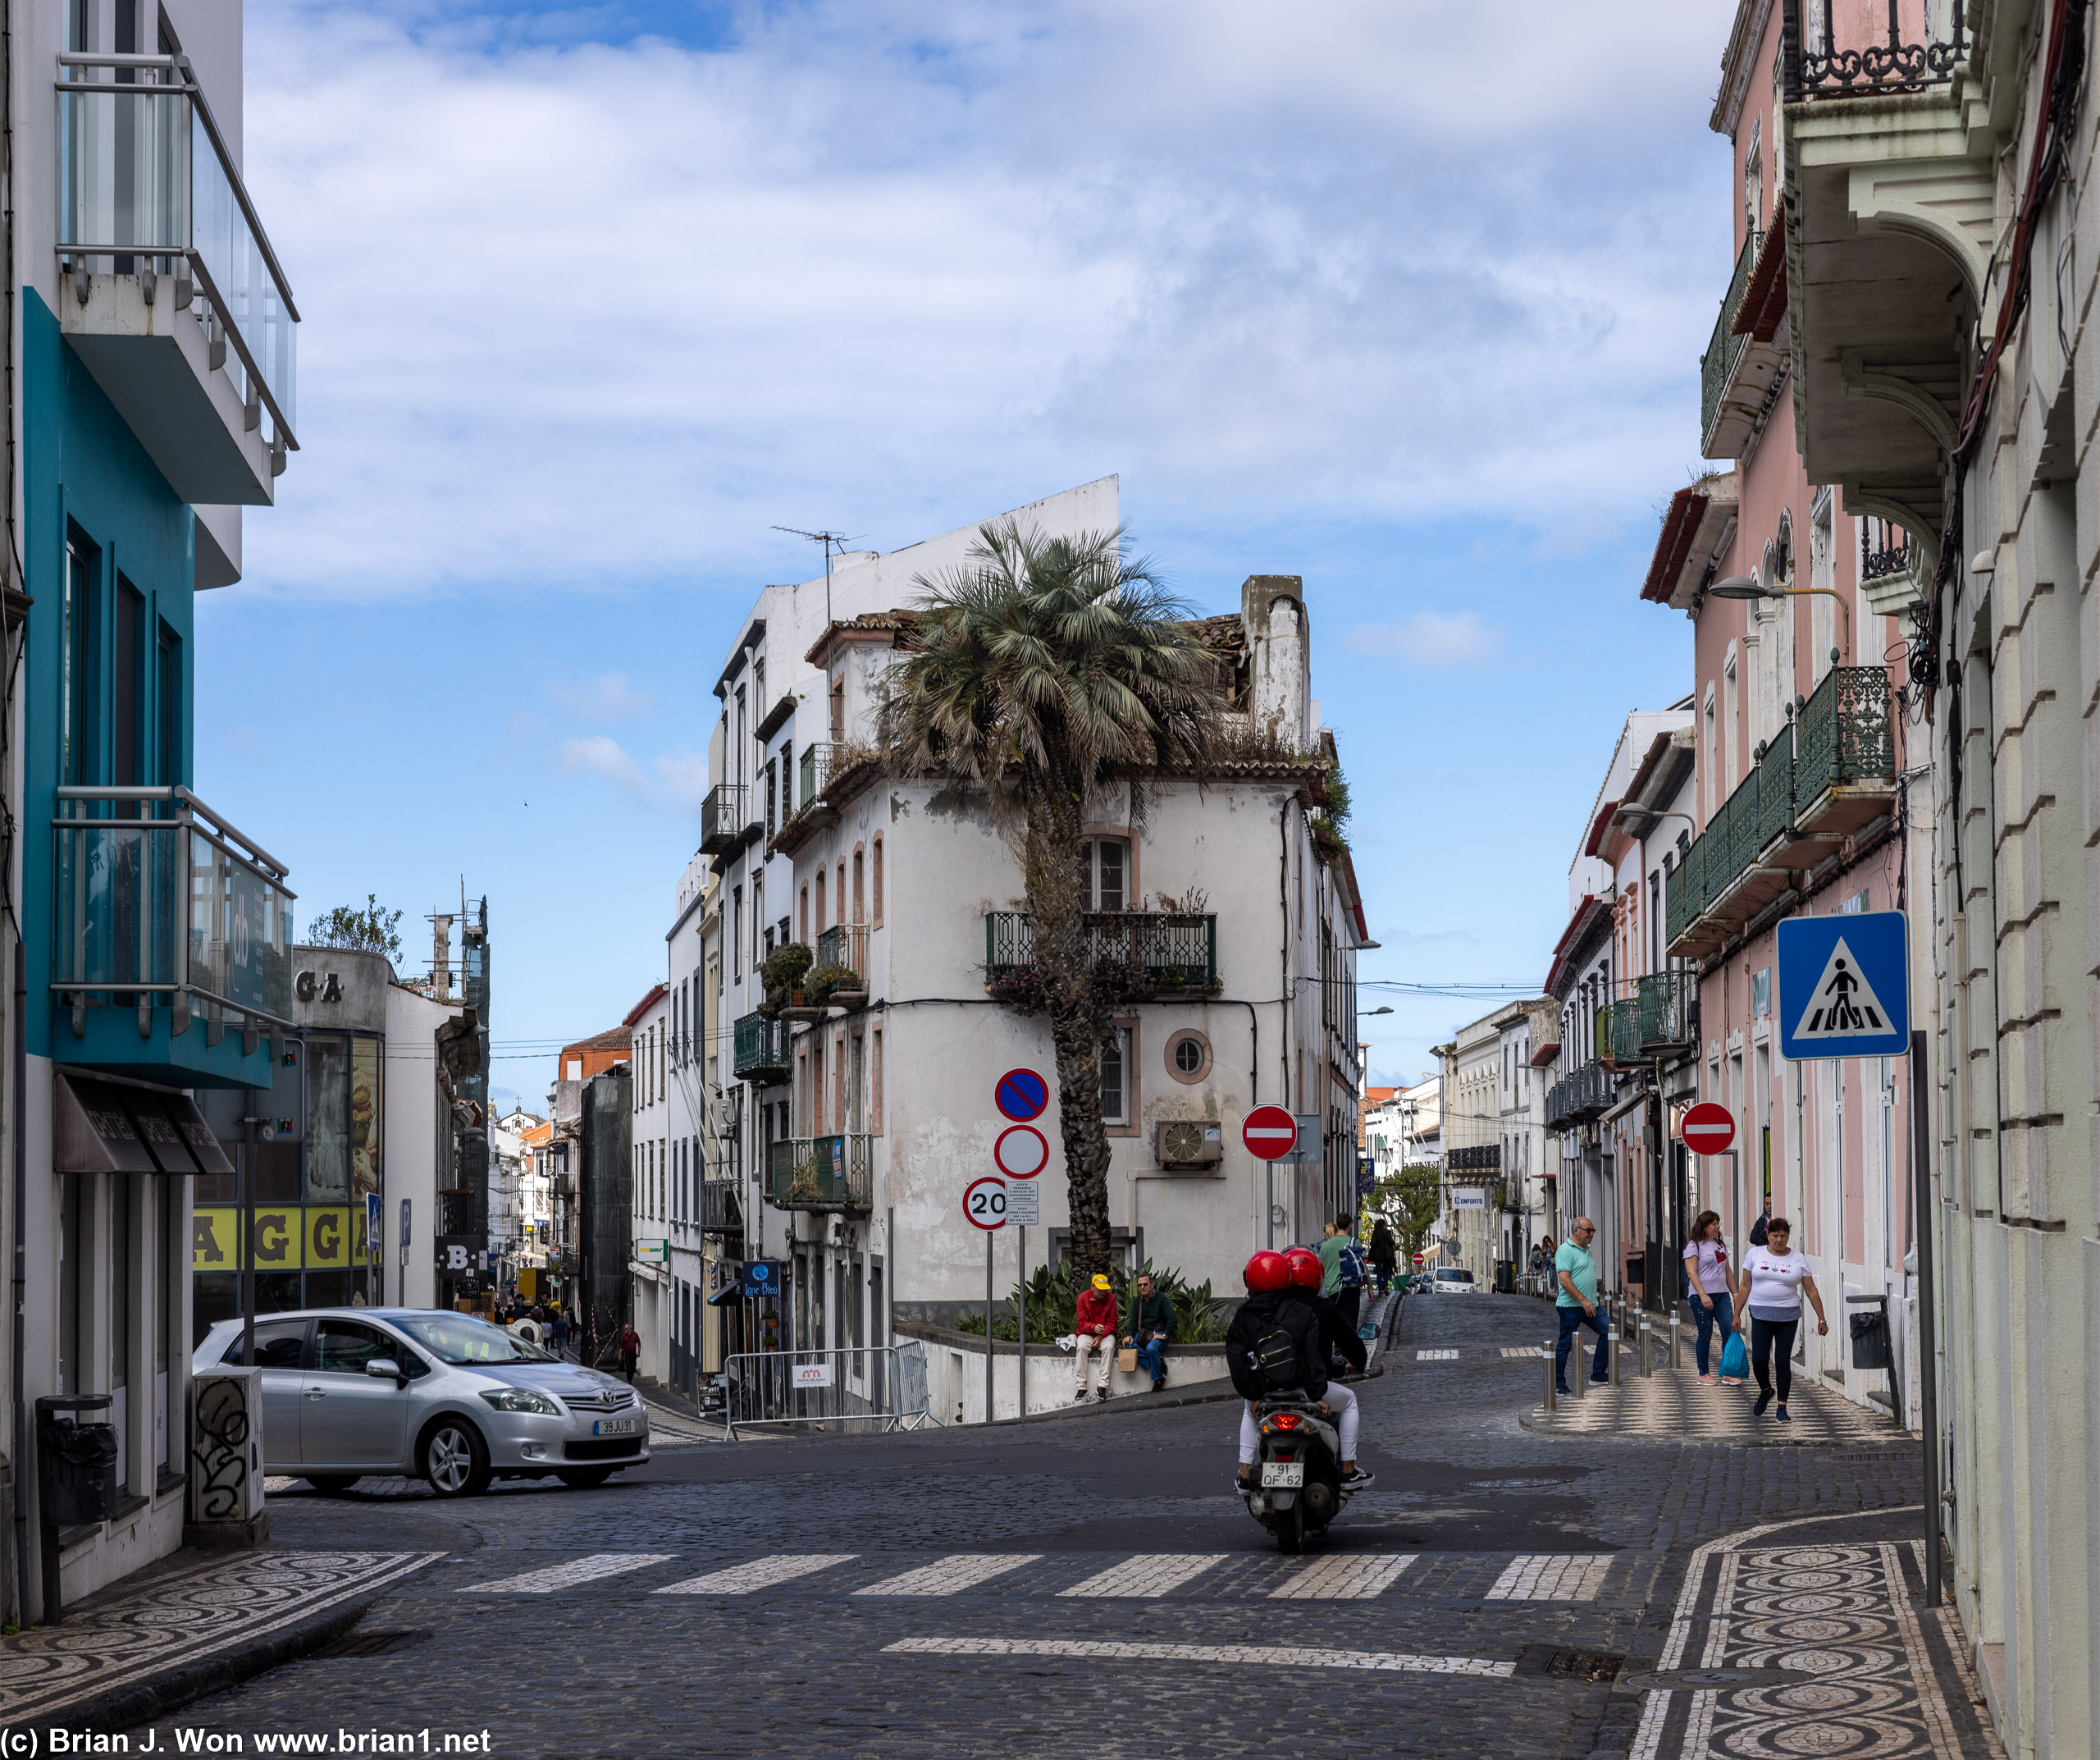 The narrow streets of Ponta Delgada.